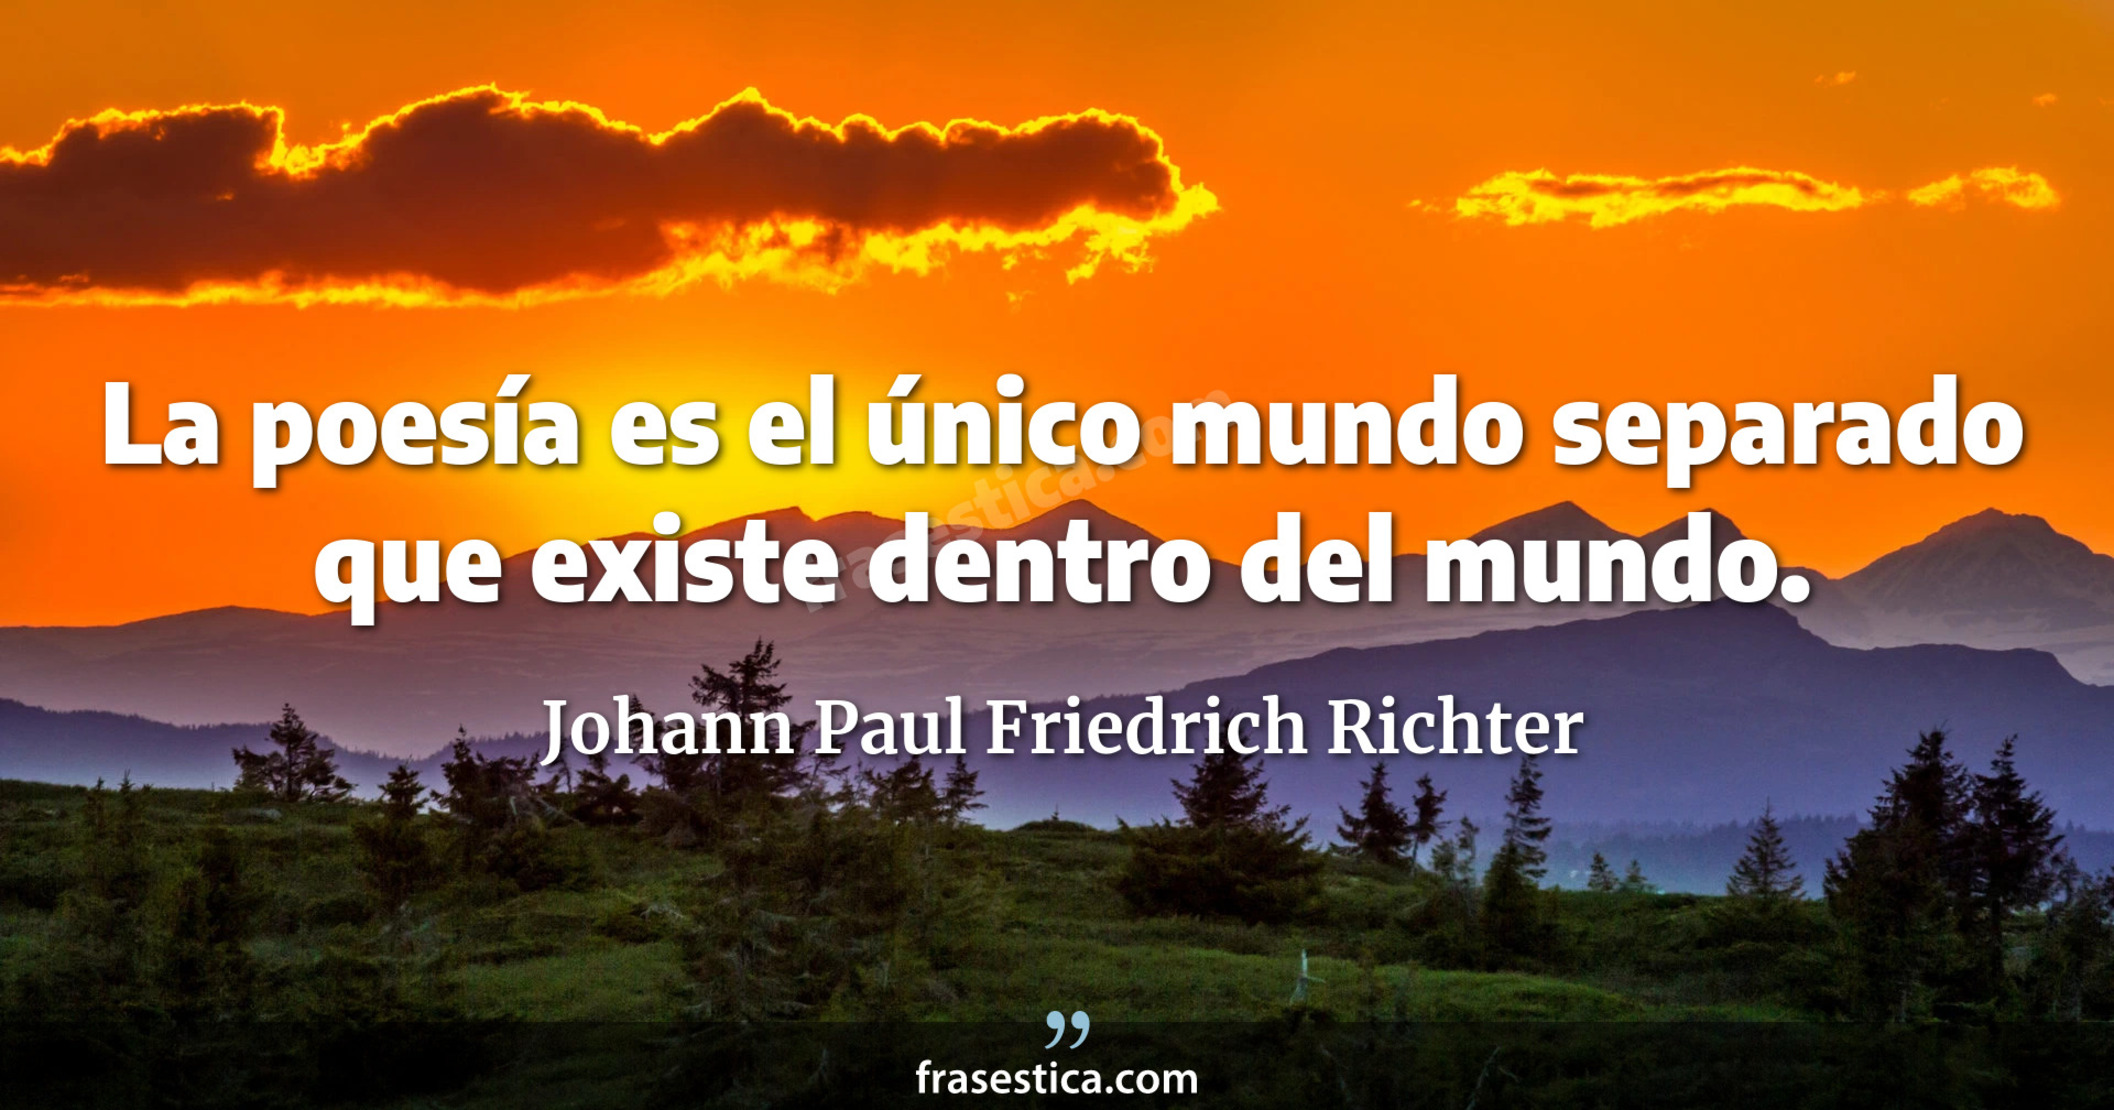 La poesía es el único mundo separado que existe dentro del mundo. - Johann Paul Friedrich Richter